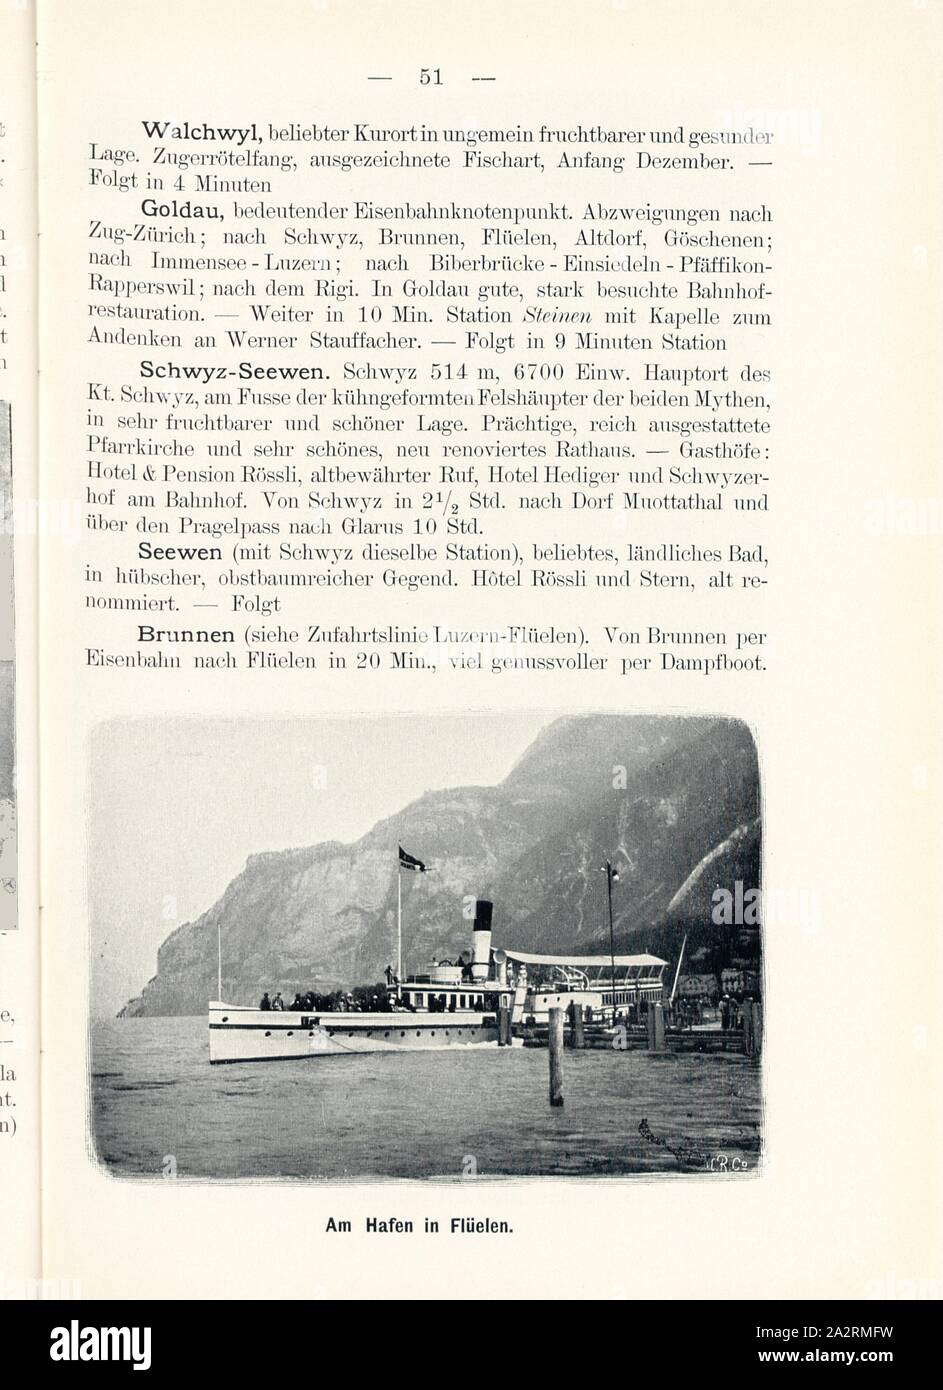 At the harbor in Flüelen, Steamboat on Lake Lucerne in the canton of Uri, Signed: M.R.C, Fig. 52, p. 51, Meisenbach, Riffarth und Co. (imp.), 1900, J. Knobel: Illustrierter Reisebegleiter für die Alpenstrasse des Klausen und ihre Zufahrtslinien. Glarus: Buchdruckerei J. Spälti, 1900 Stock Photo